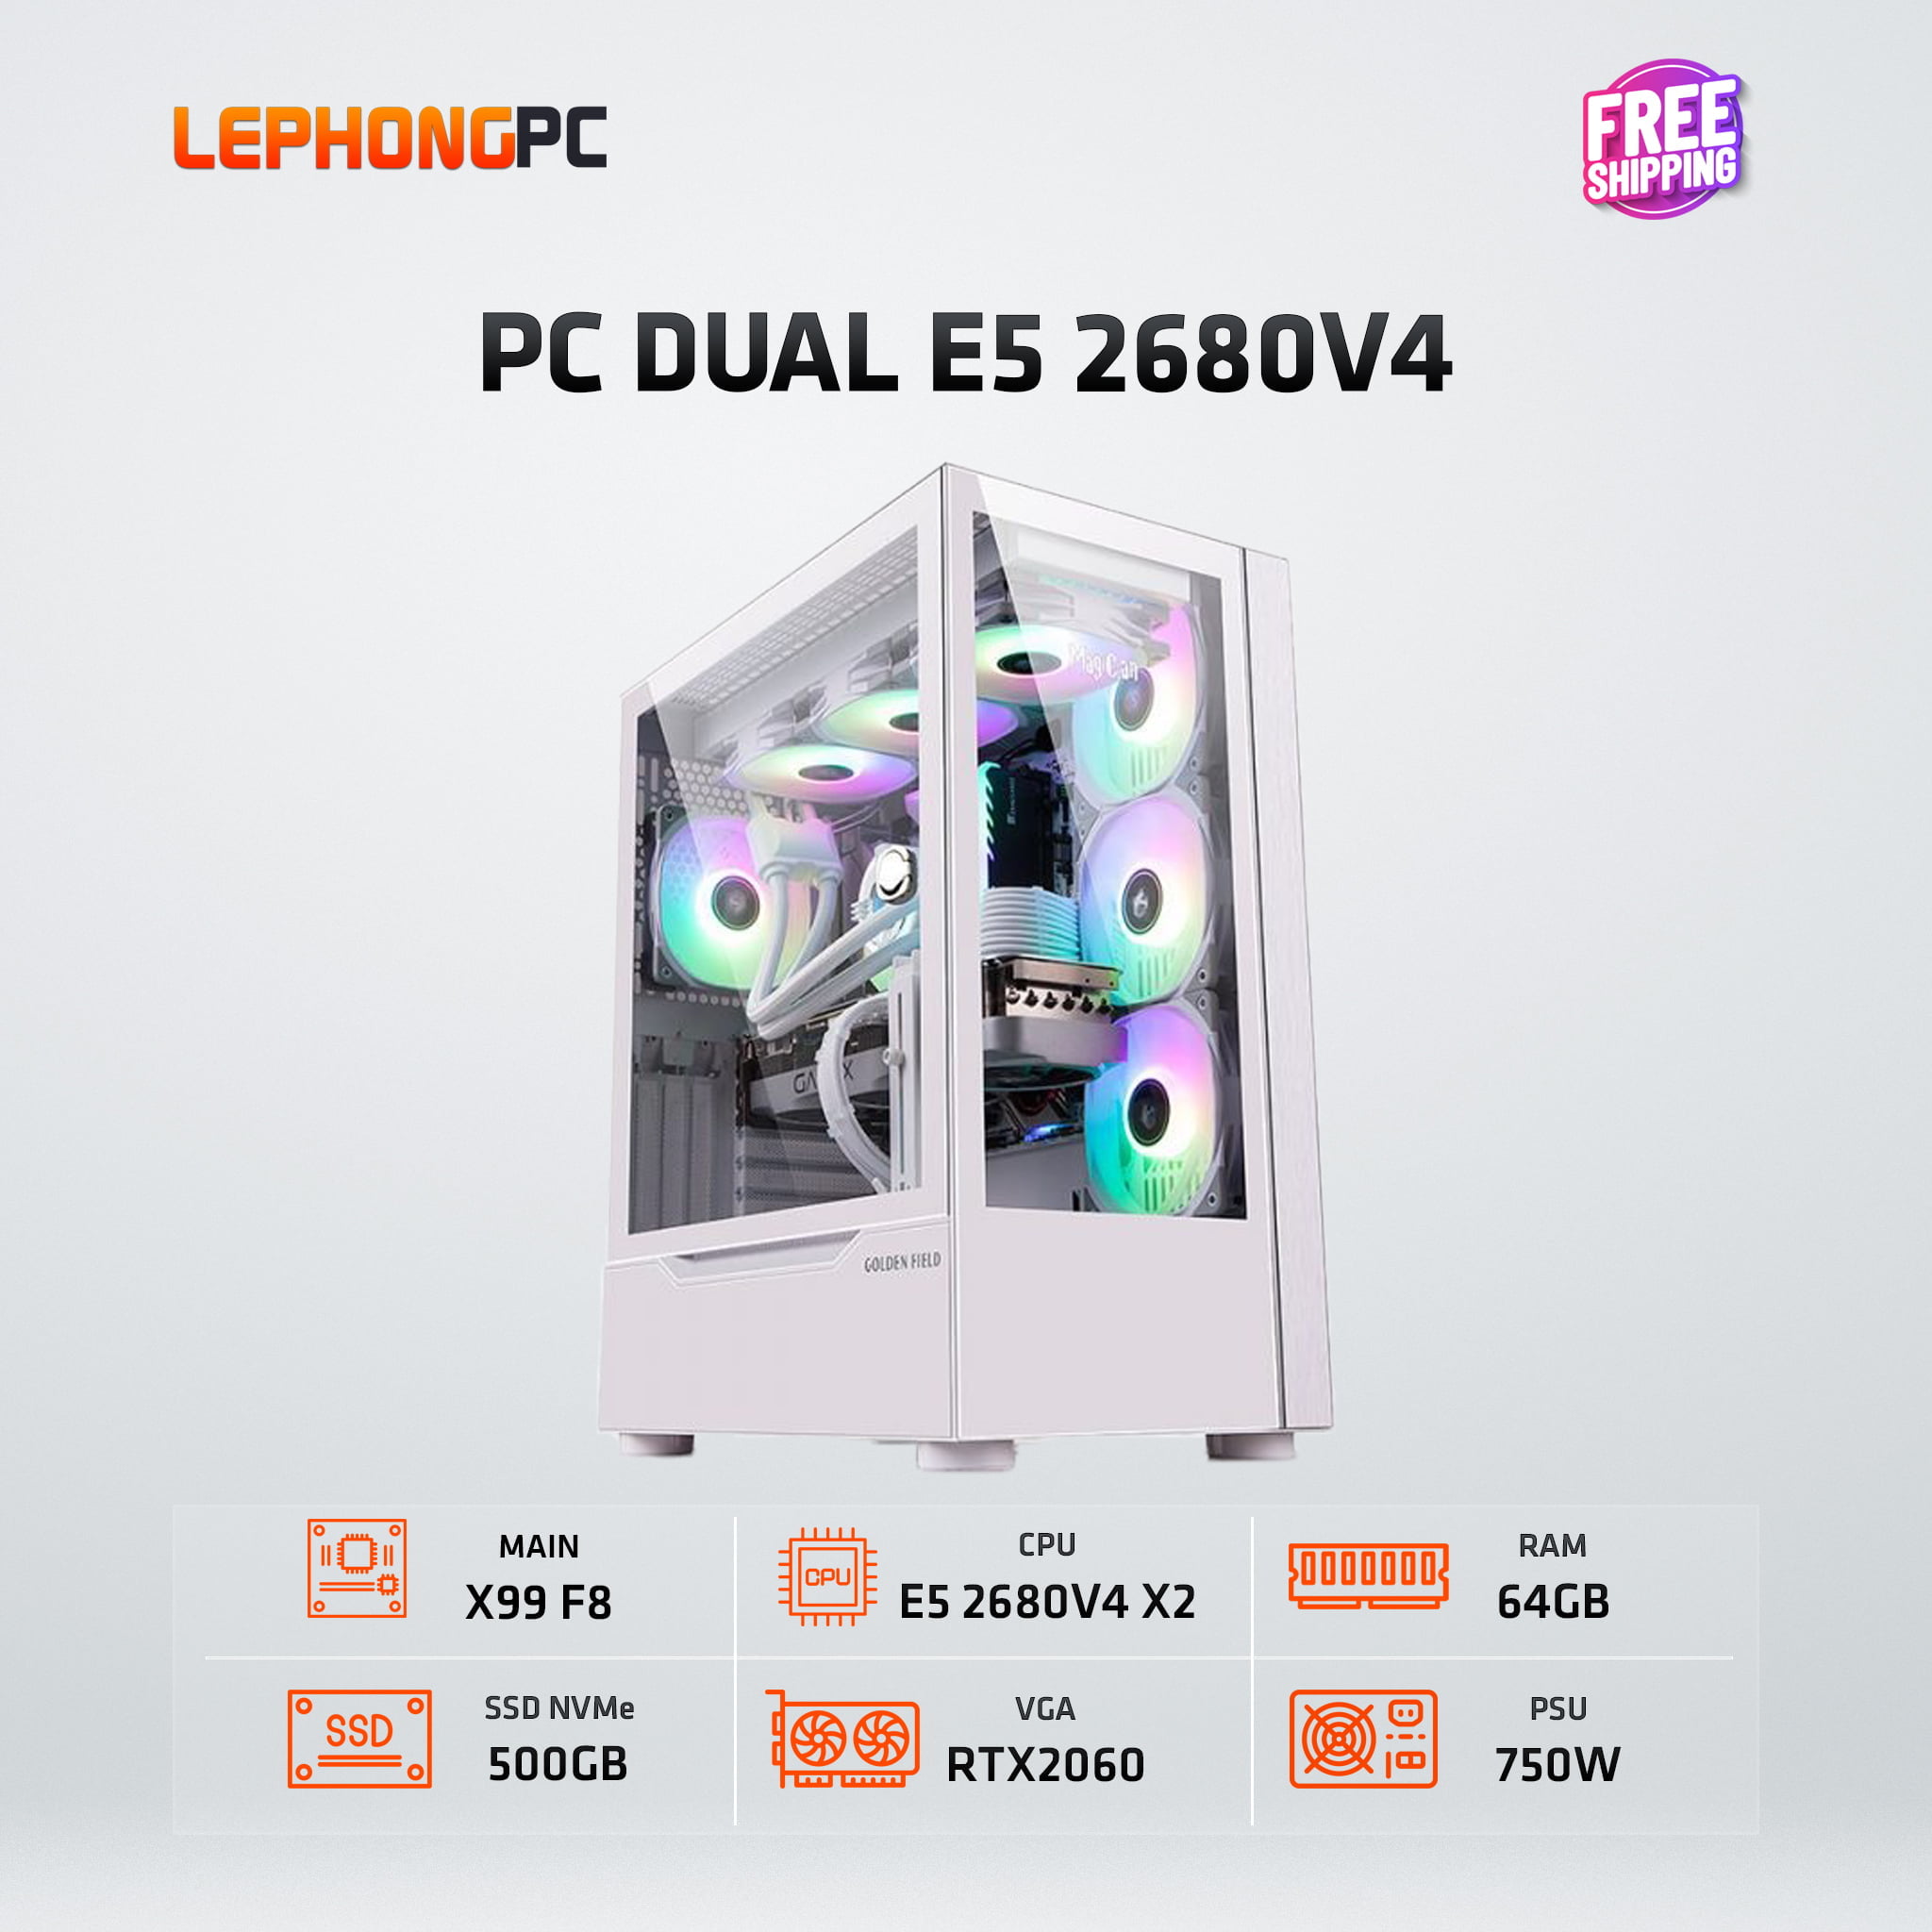 PC DUAL E5 2680V4